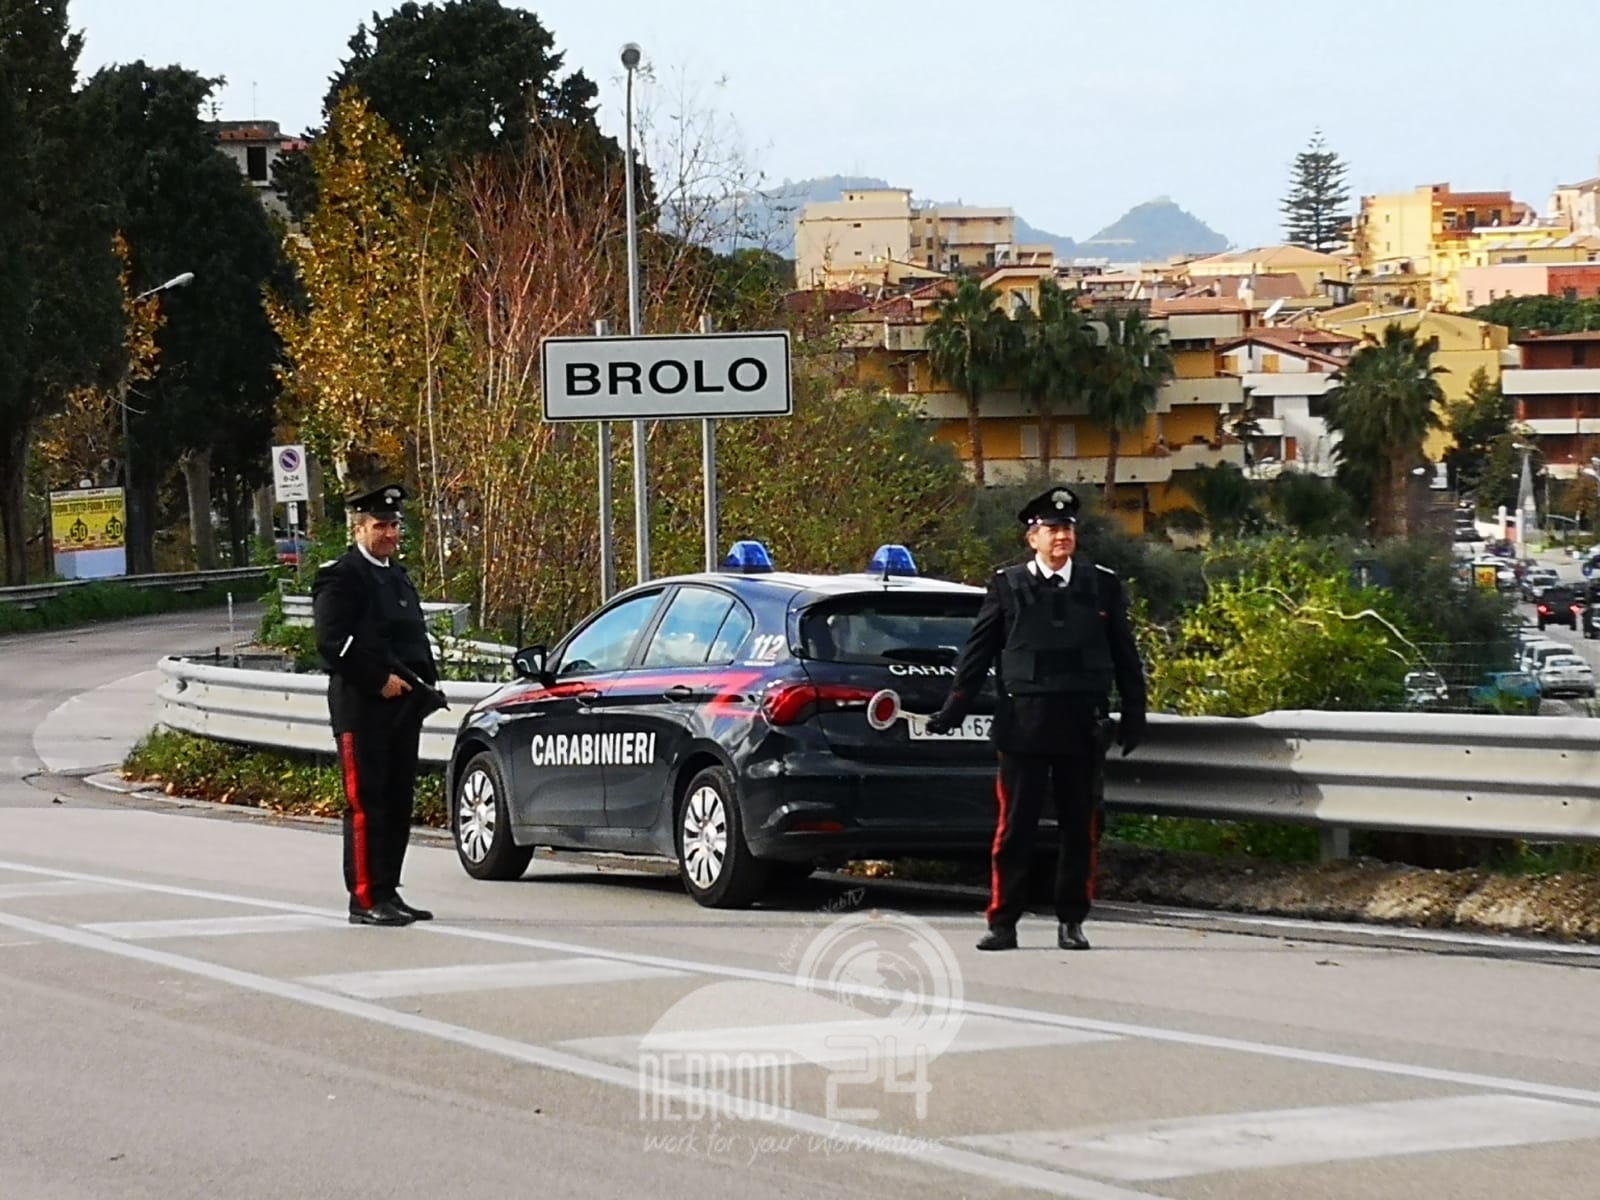 Brolo  – Percepisce il reddito di cittadinanza ma taglieggia alcuni commercianti, arrestato dai Carabinieri